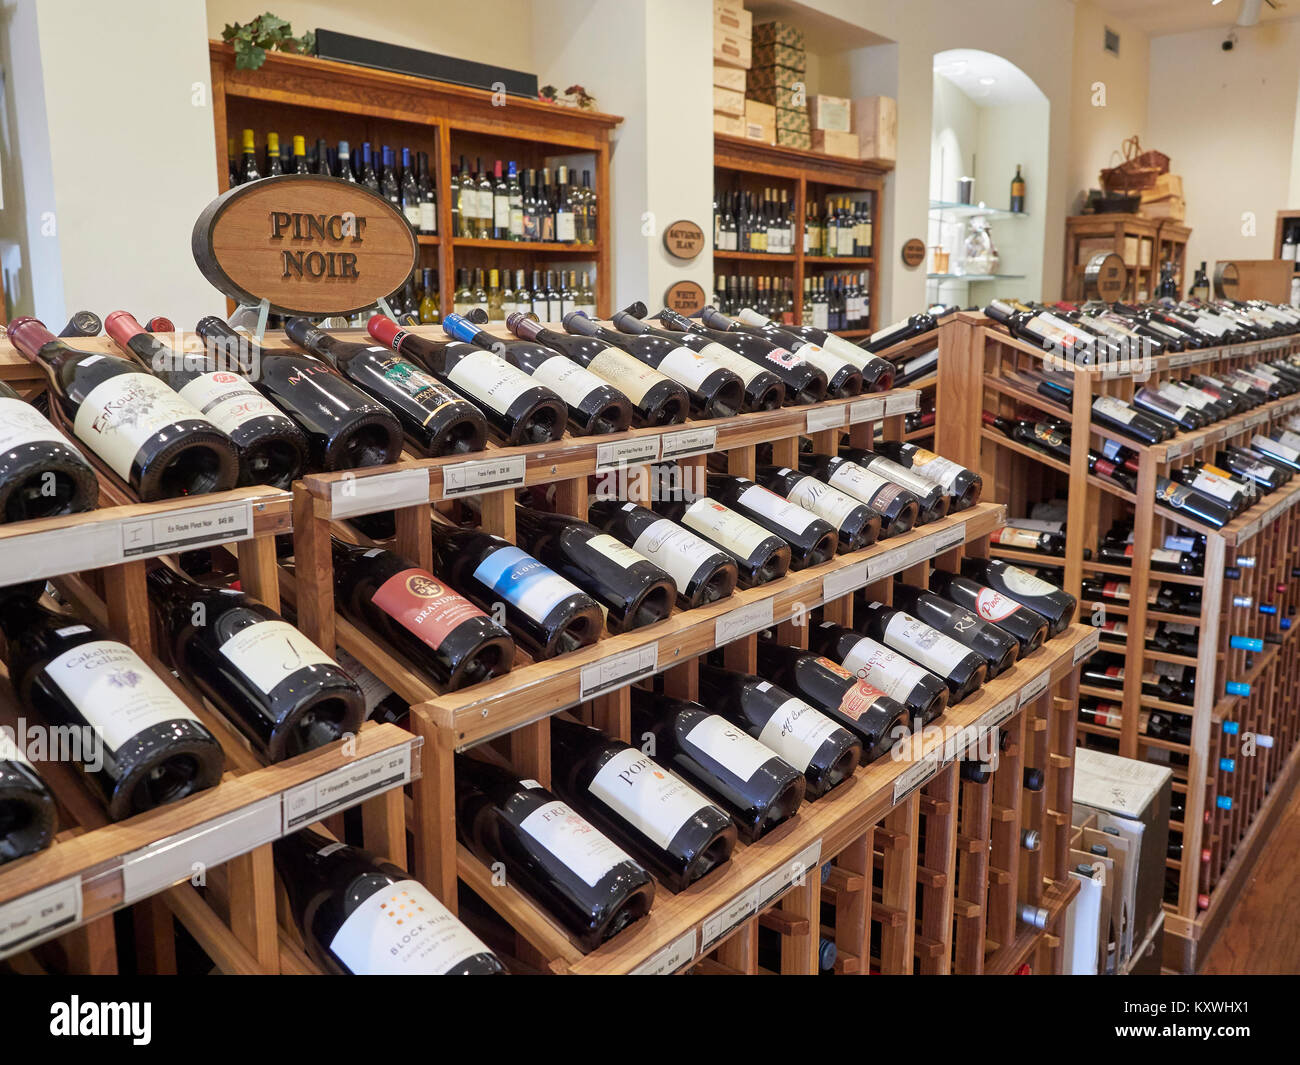 Wein shop Regale und Regalsysteme anzeigen viele Sorten von Rot- und Weißweinen zum Verkauf in Montgomery Alabama, Vereinigte Staaten. Stockfoto